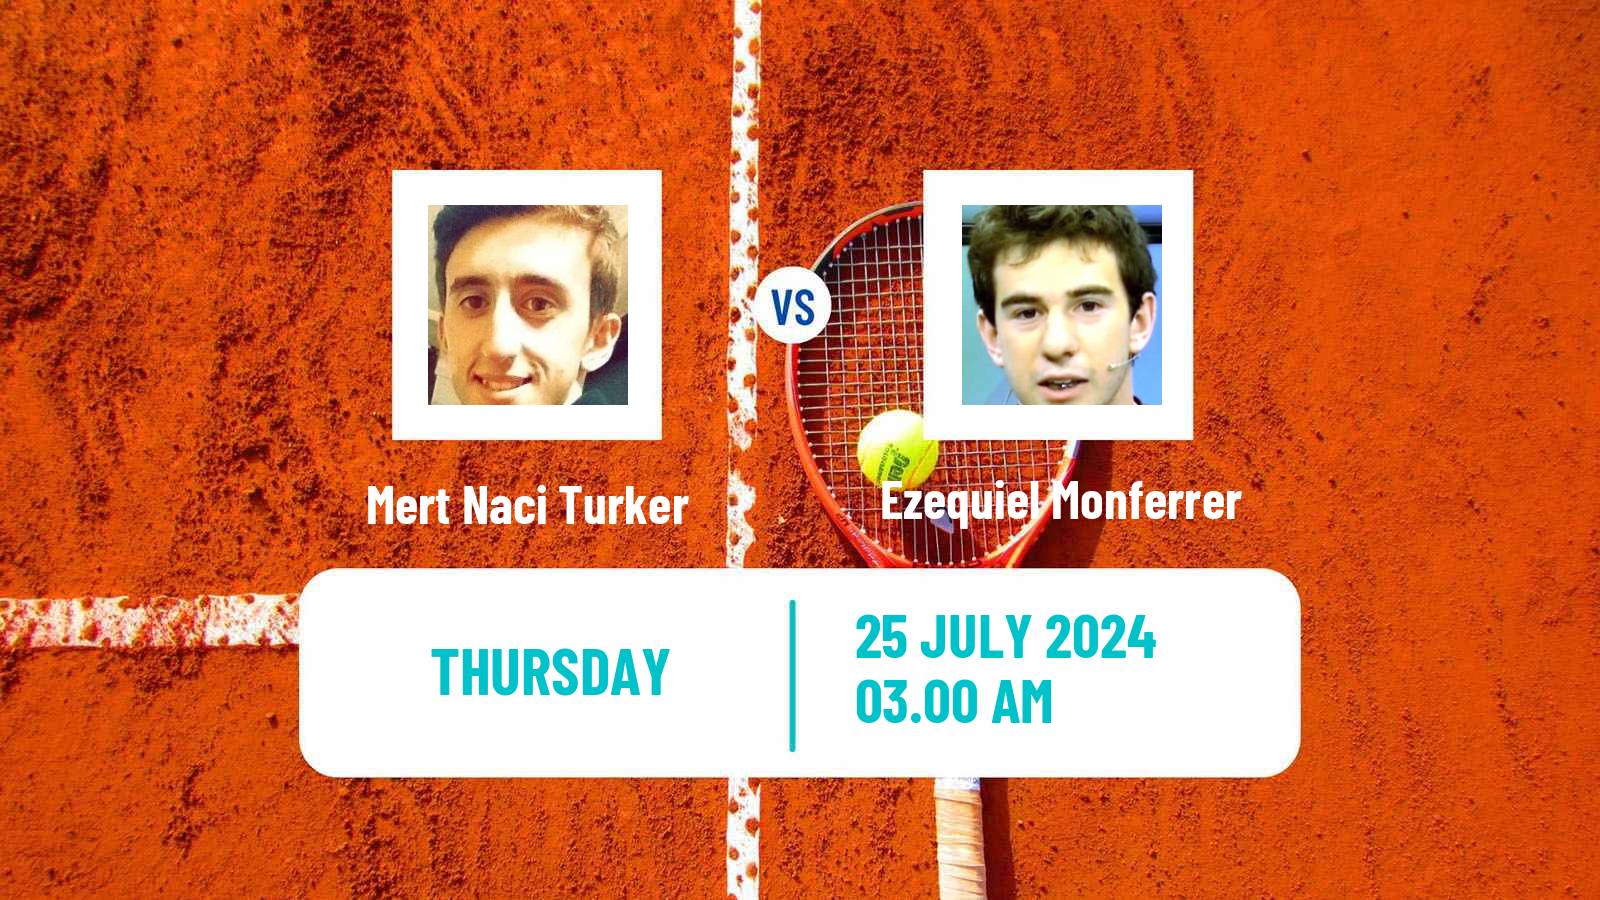 Tennis ITF M15 Kursumlijska Banja 12 Men Mert Naci Turker - Ezequiel Monferrer